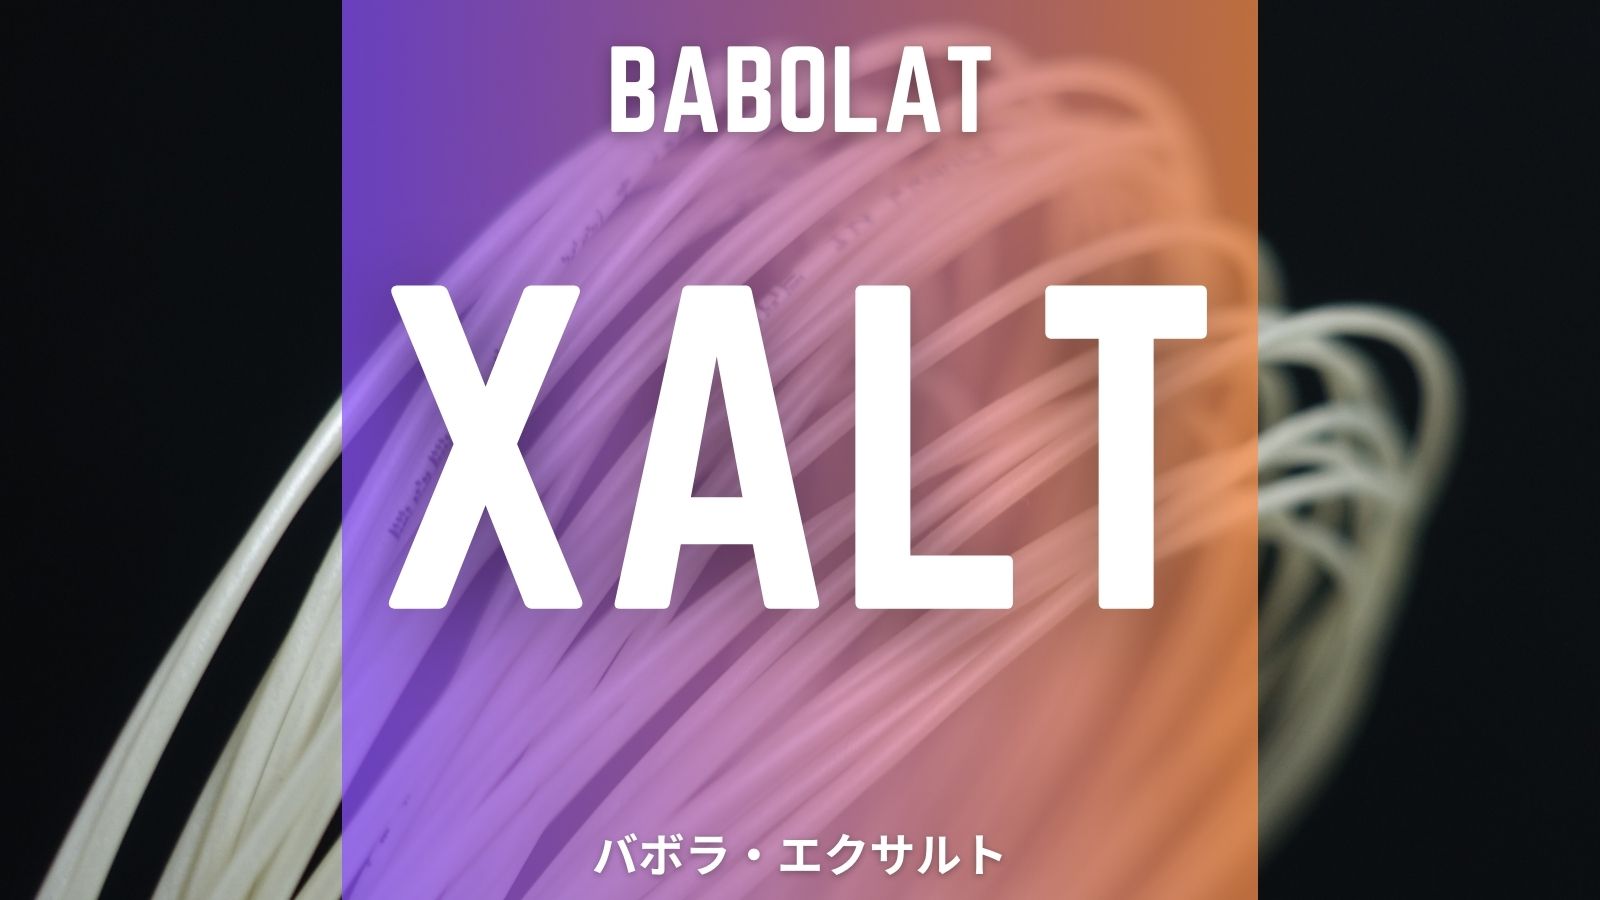 エクサルト(バボラ)をインプレ。競技者向けナイロンマルチの性能を評価。Babolat XALT｜アドブロ/テニス